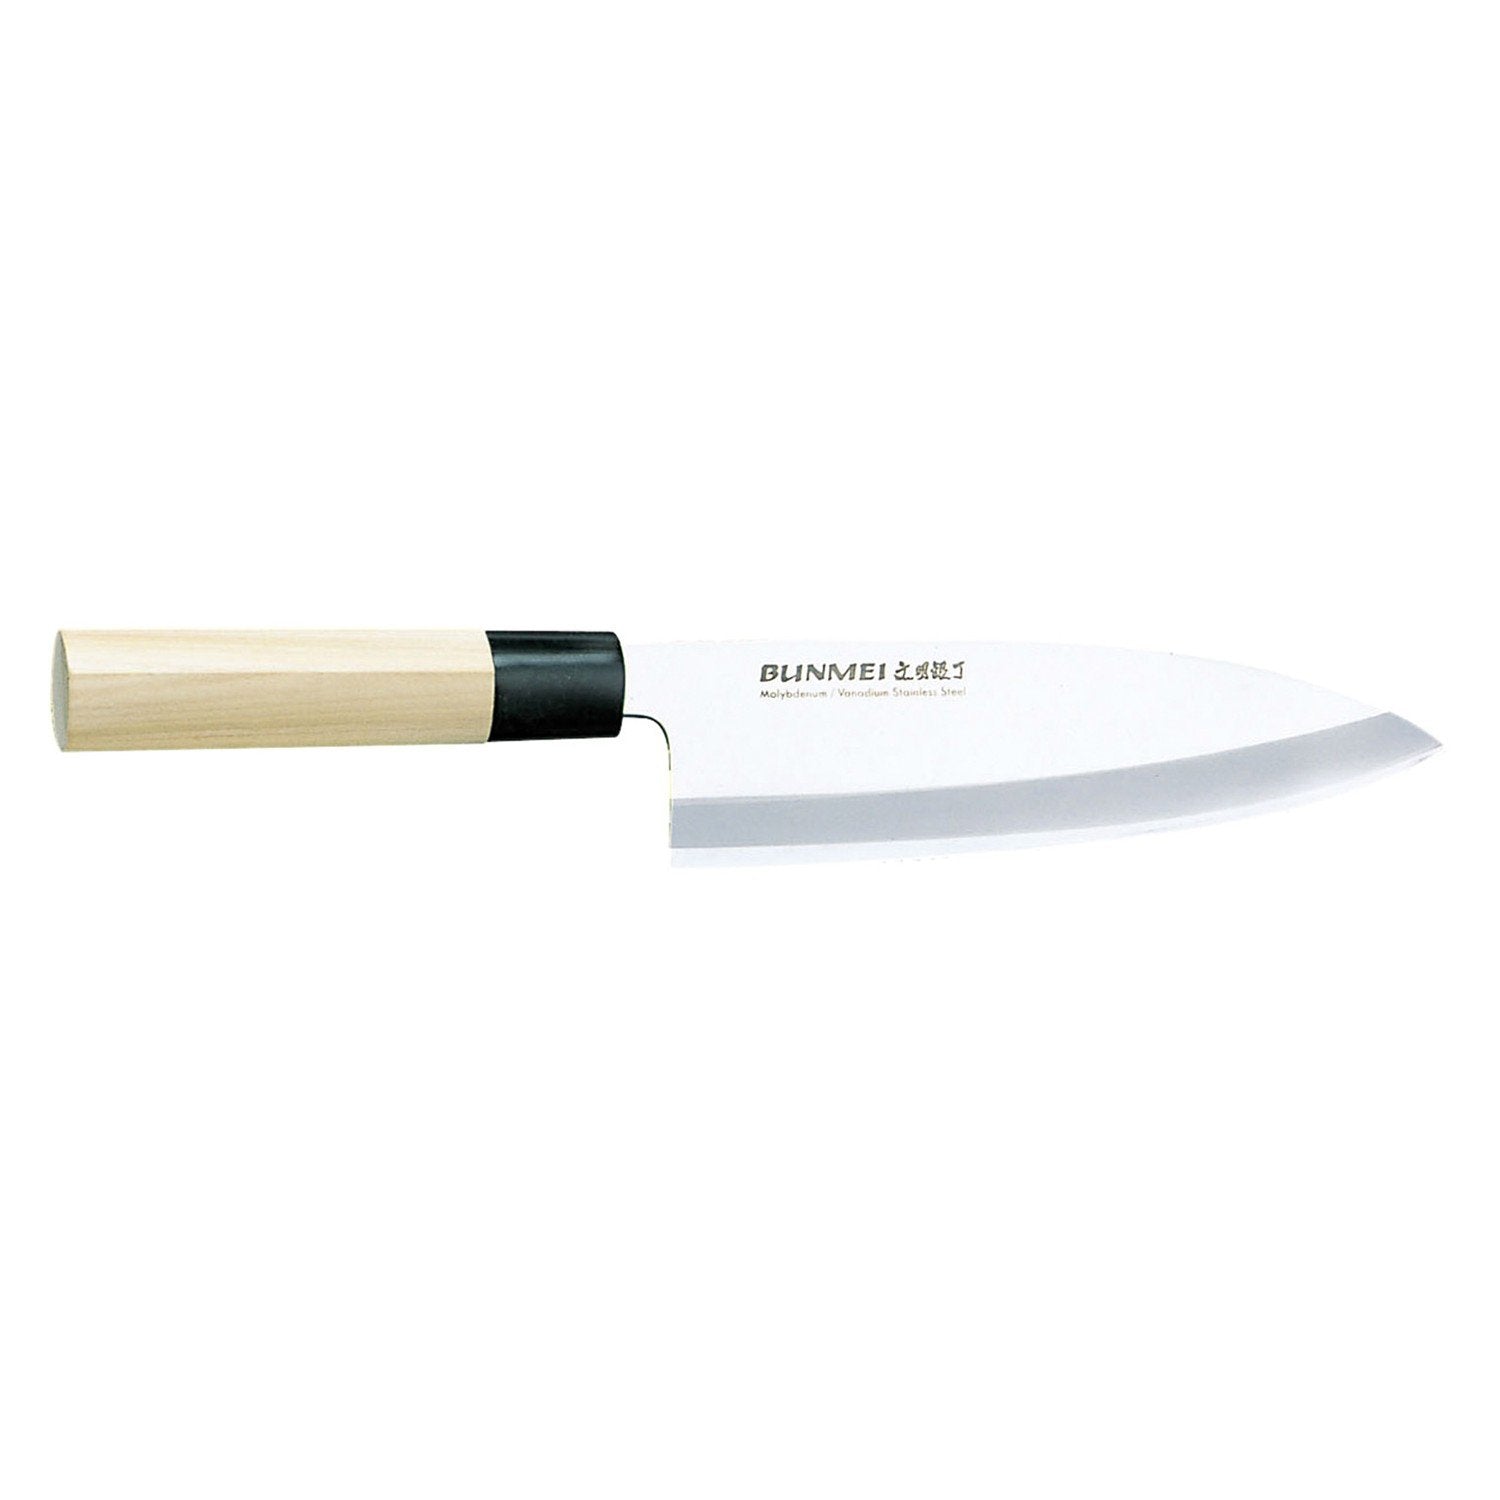 Global Bunmei deba kniv 1801/195 mm